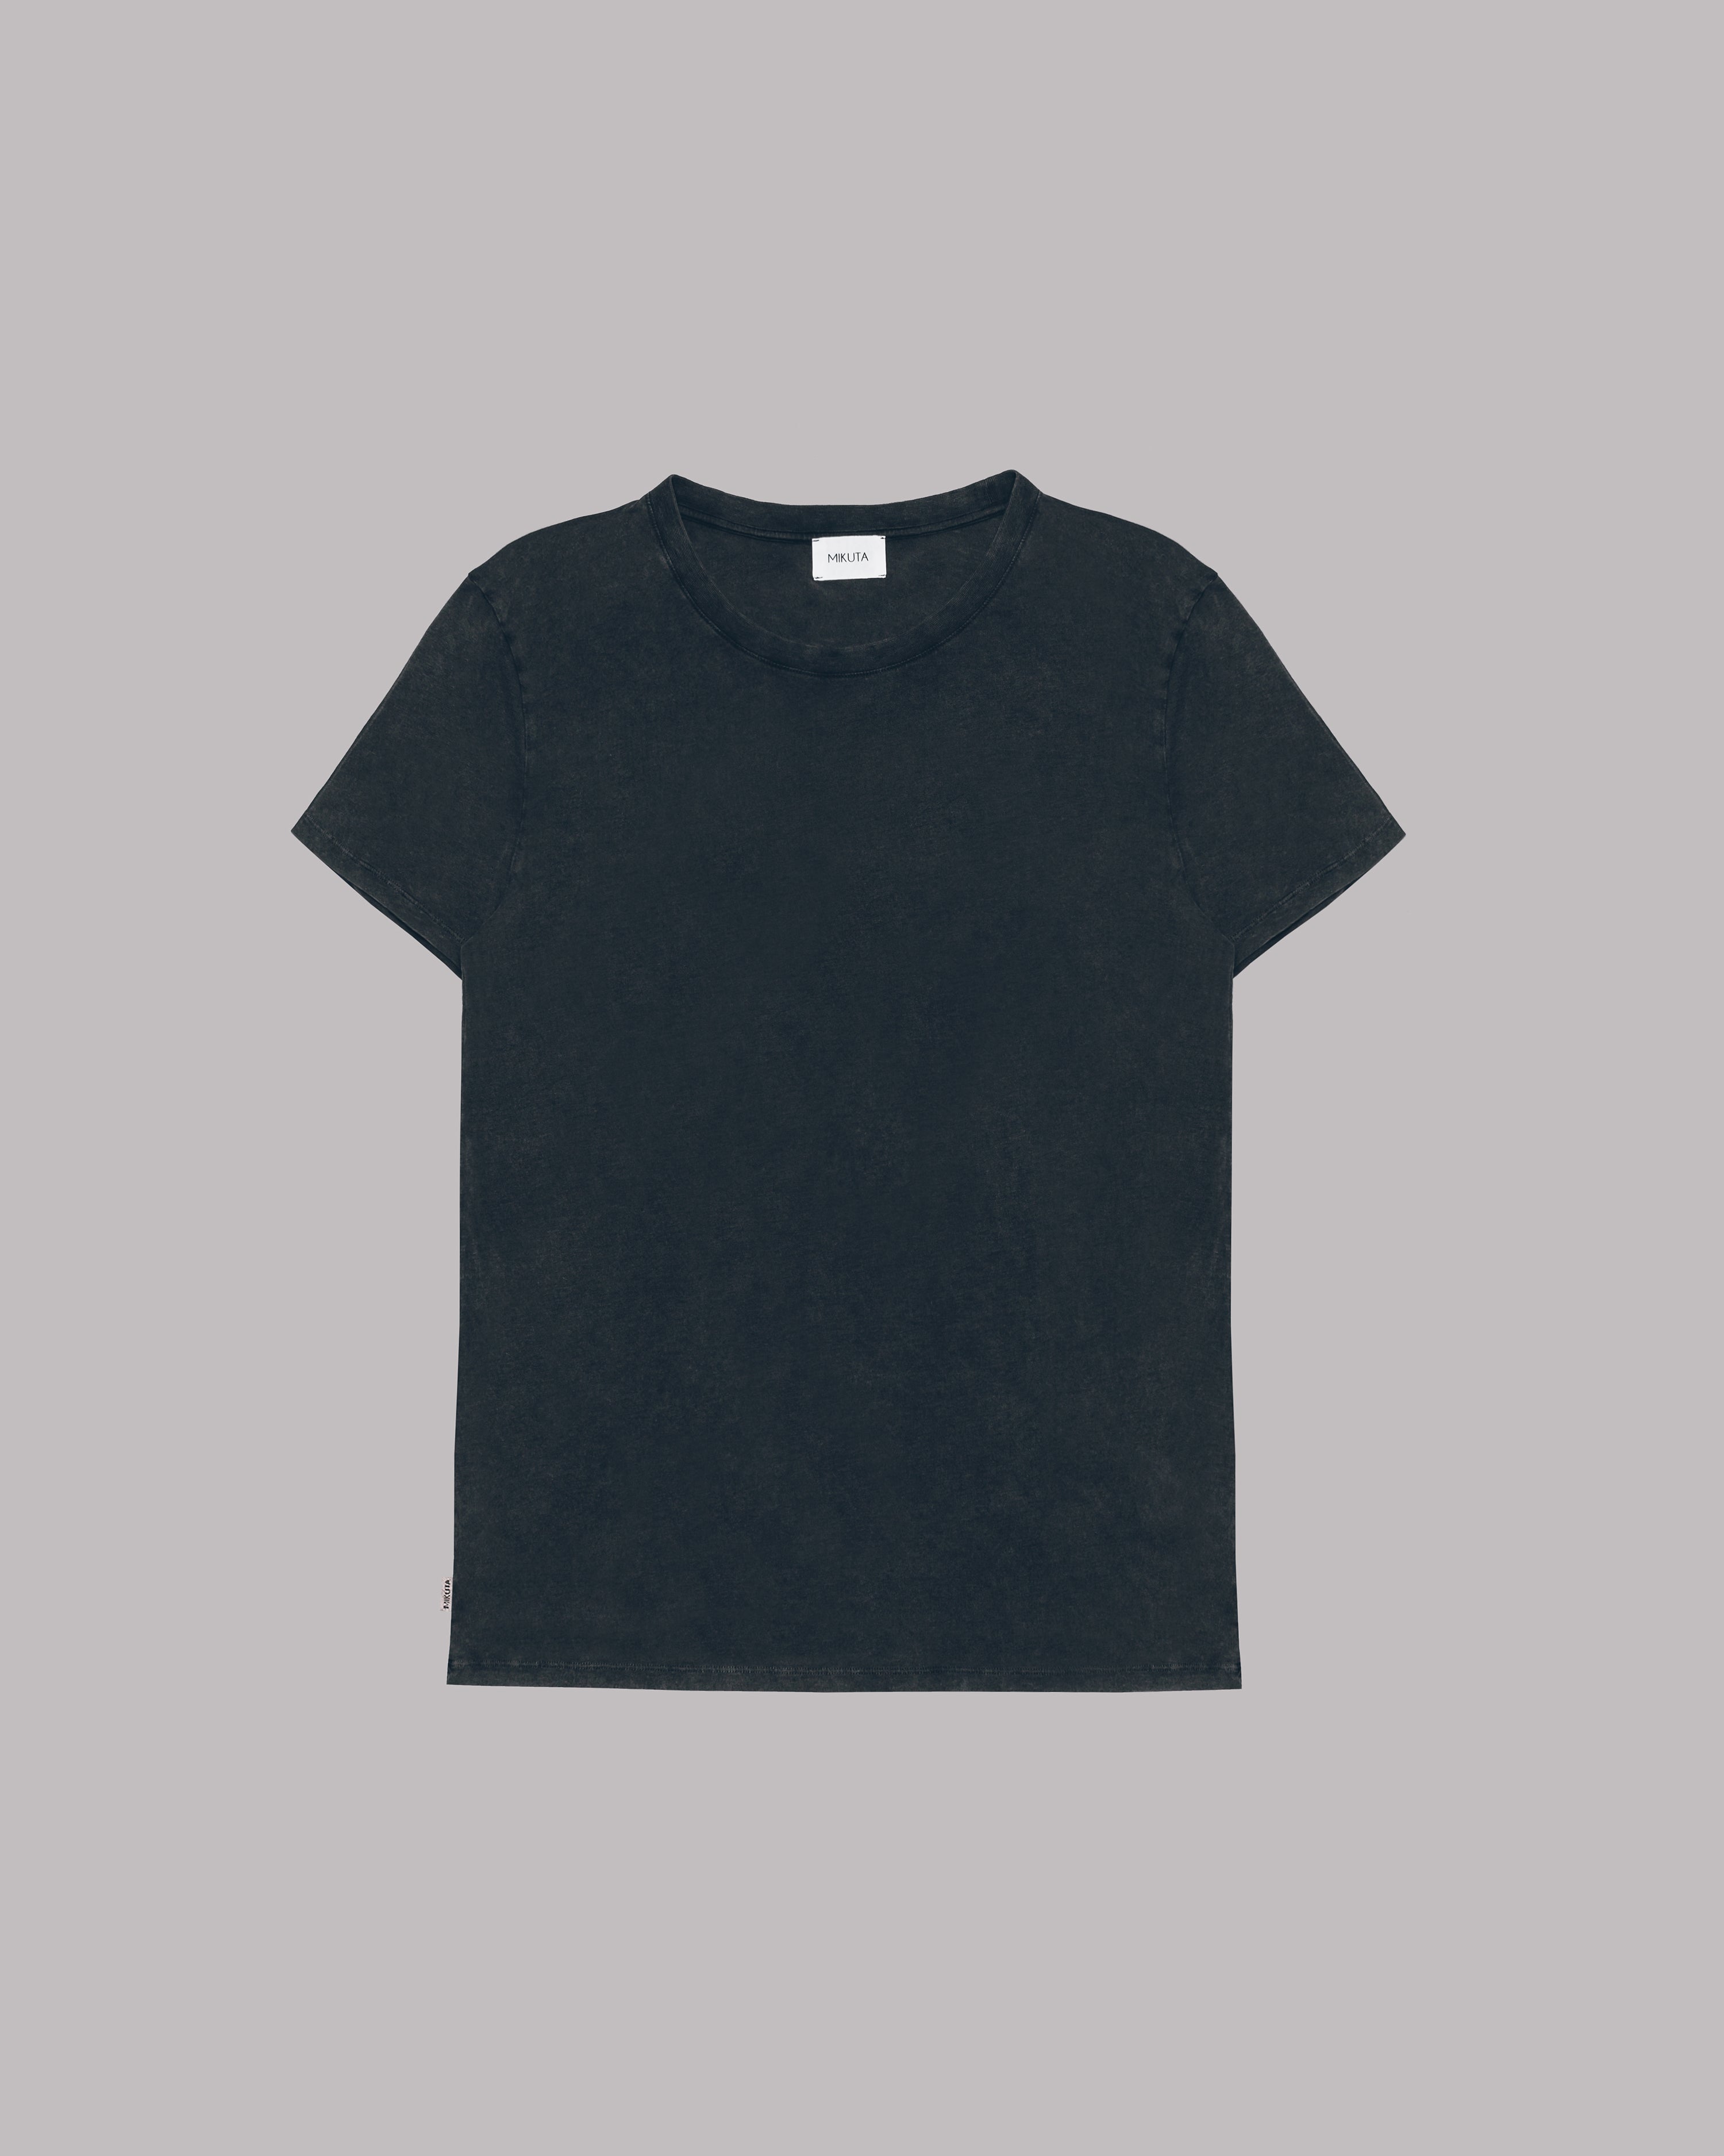 The Dark Faded Standard T-Shirt